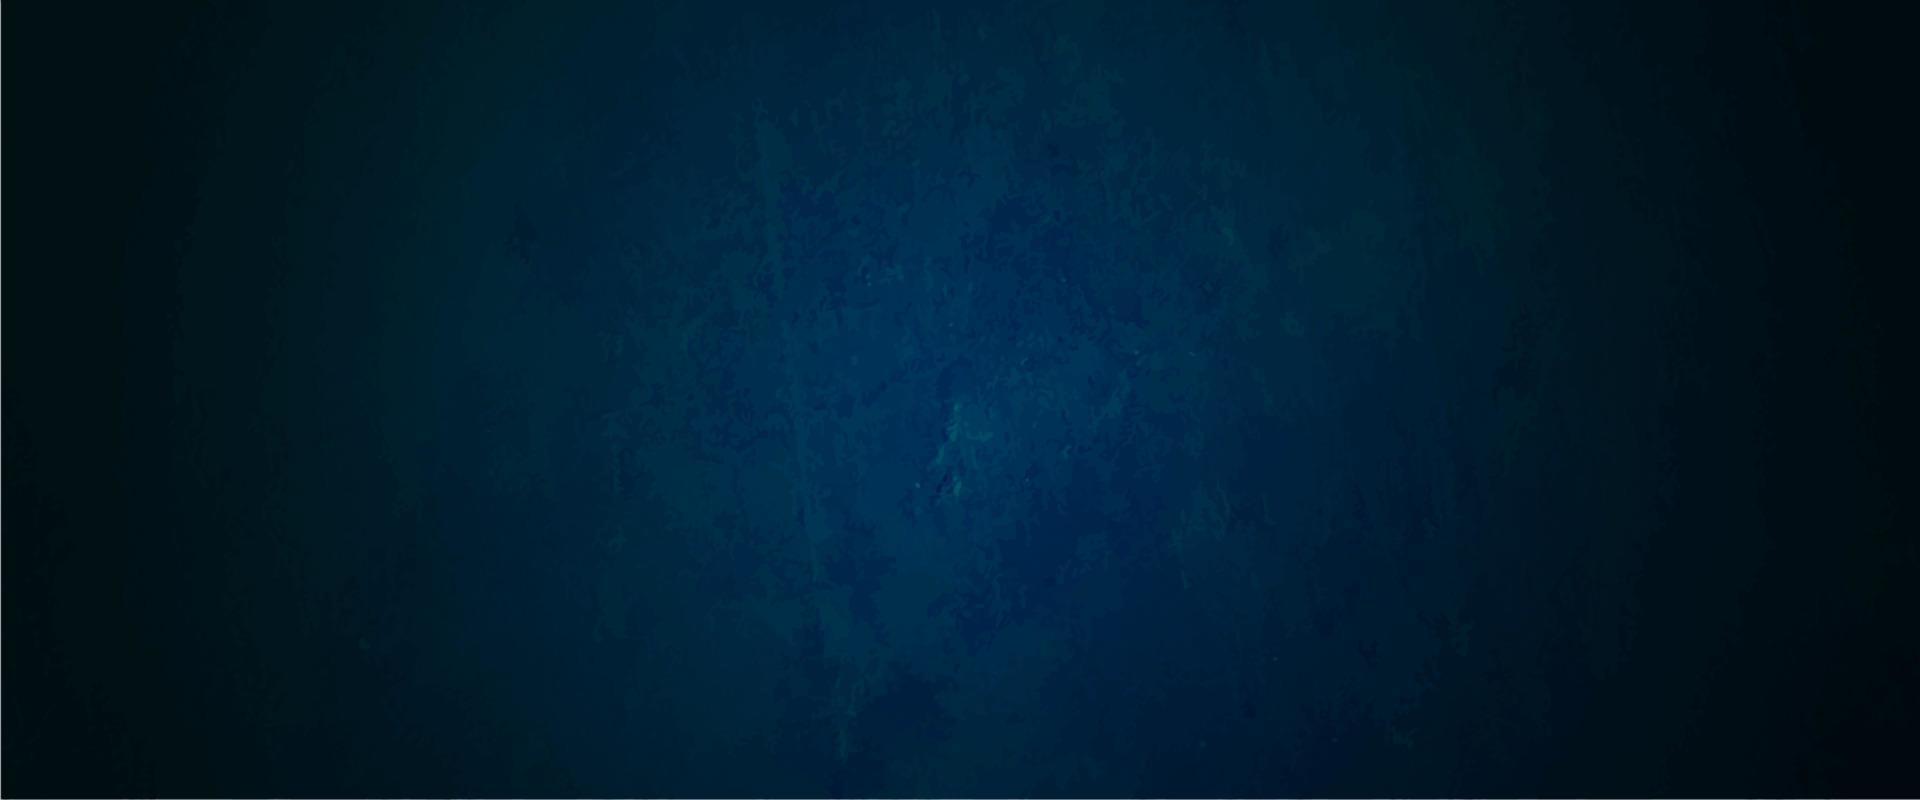 fond de texture grunge bleu foncé abstrait vecteur